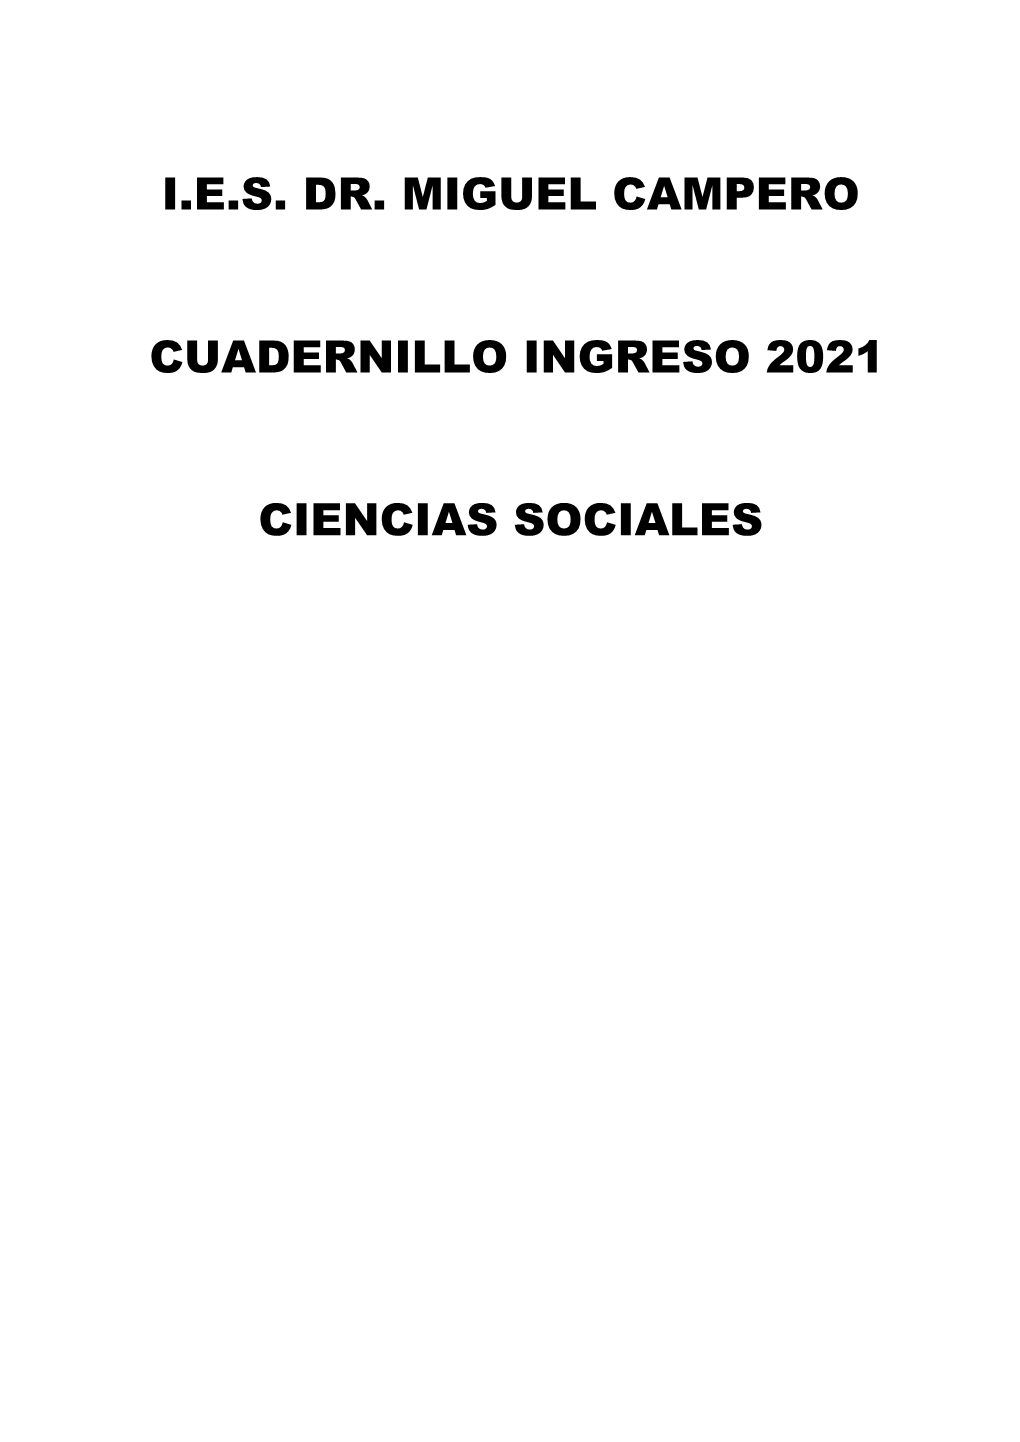 I.E.S. Dr. Miguel Campero Cuadernillo Ingreso 2021 Ciencias Sociales